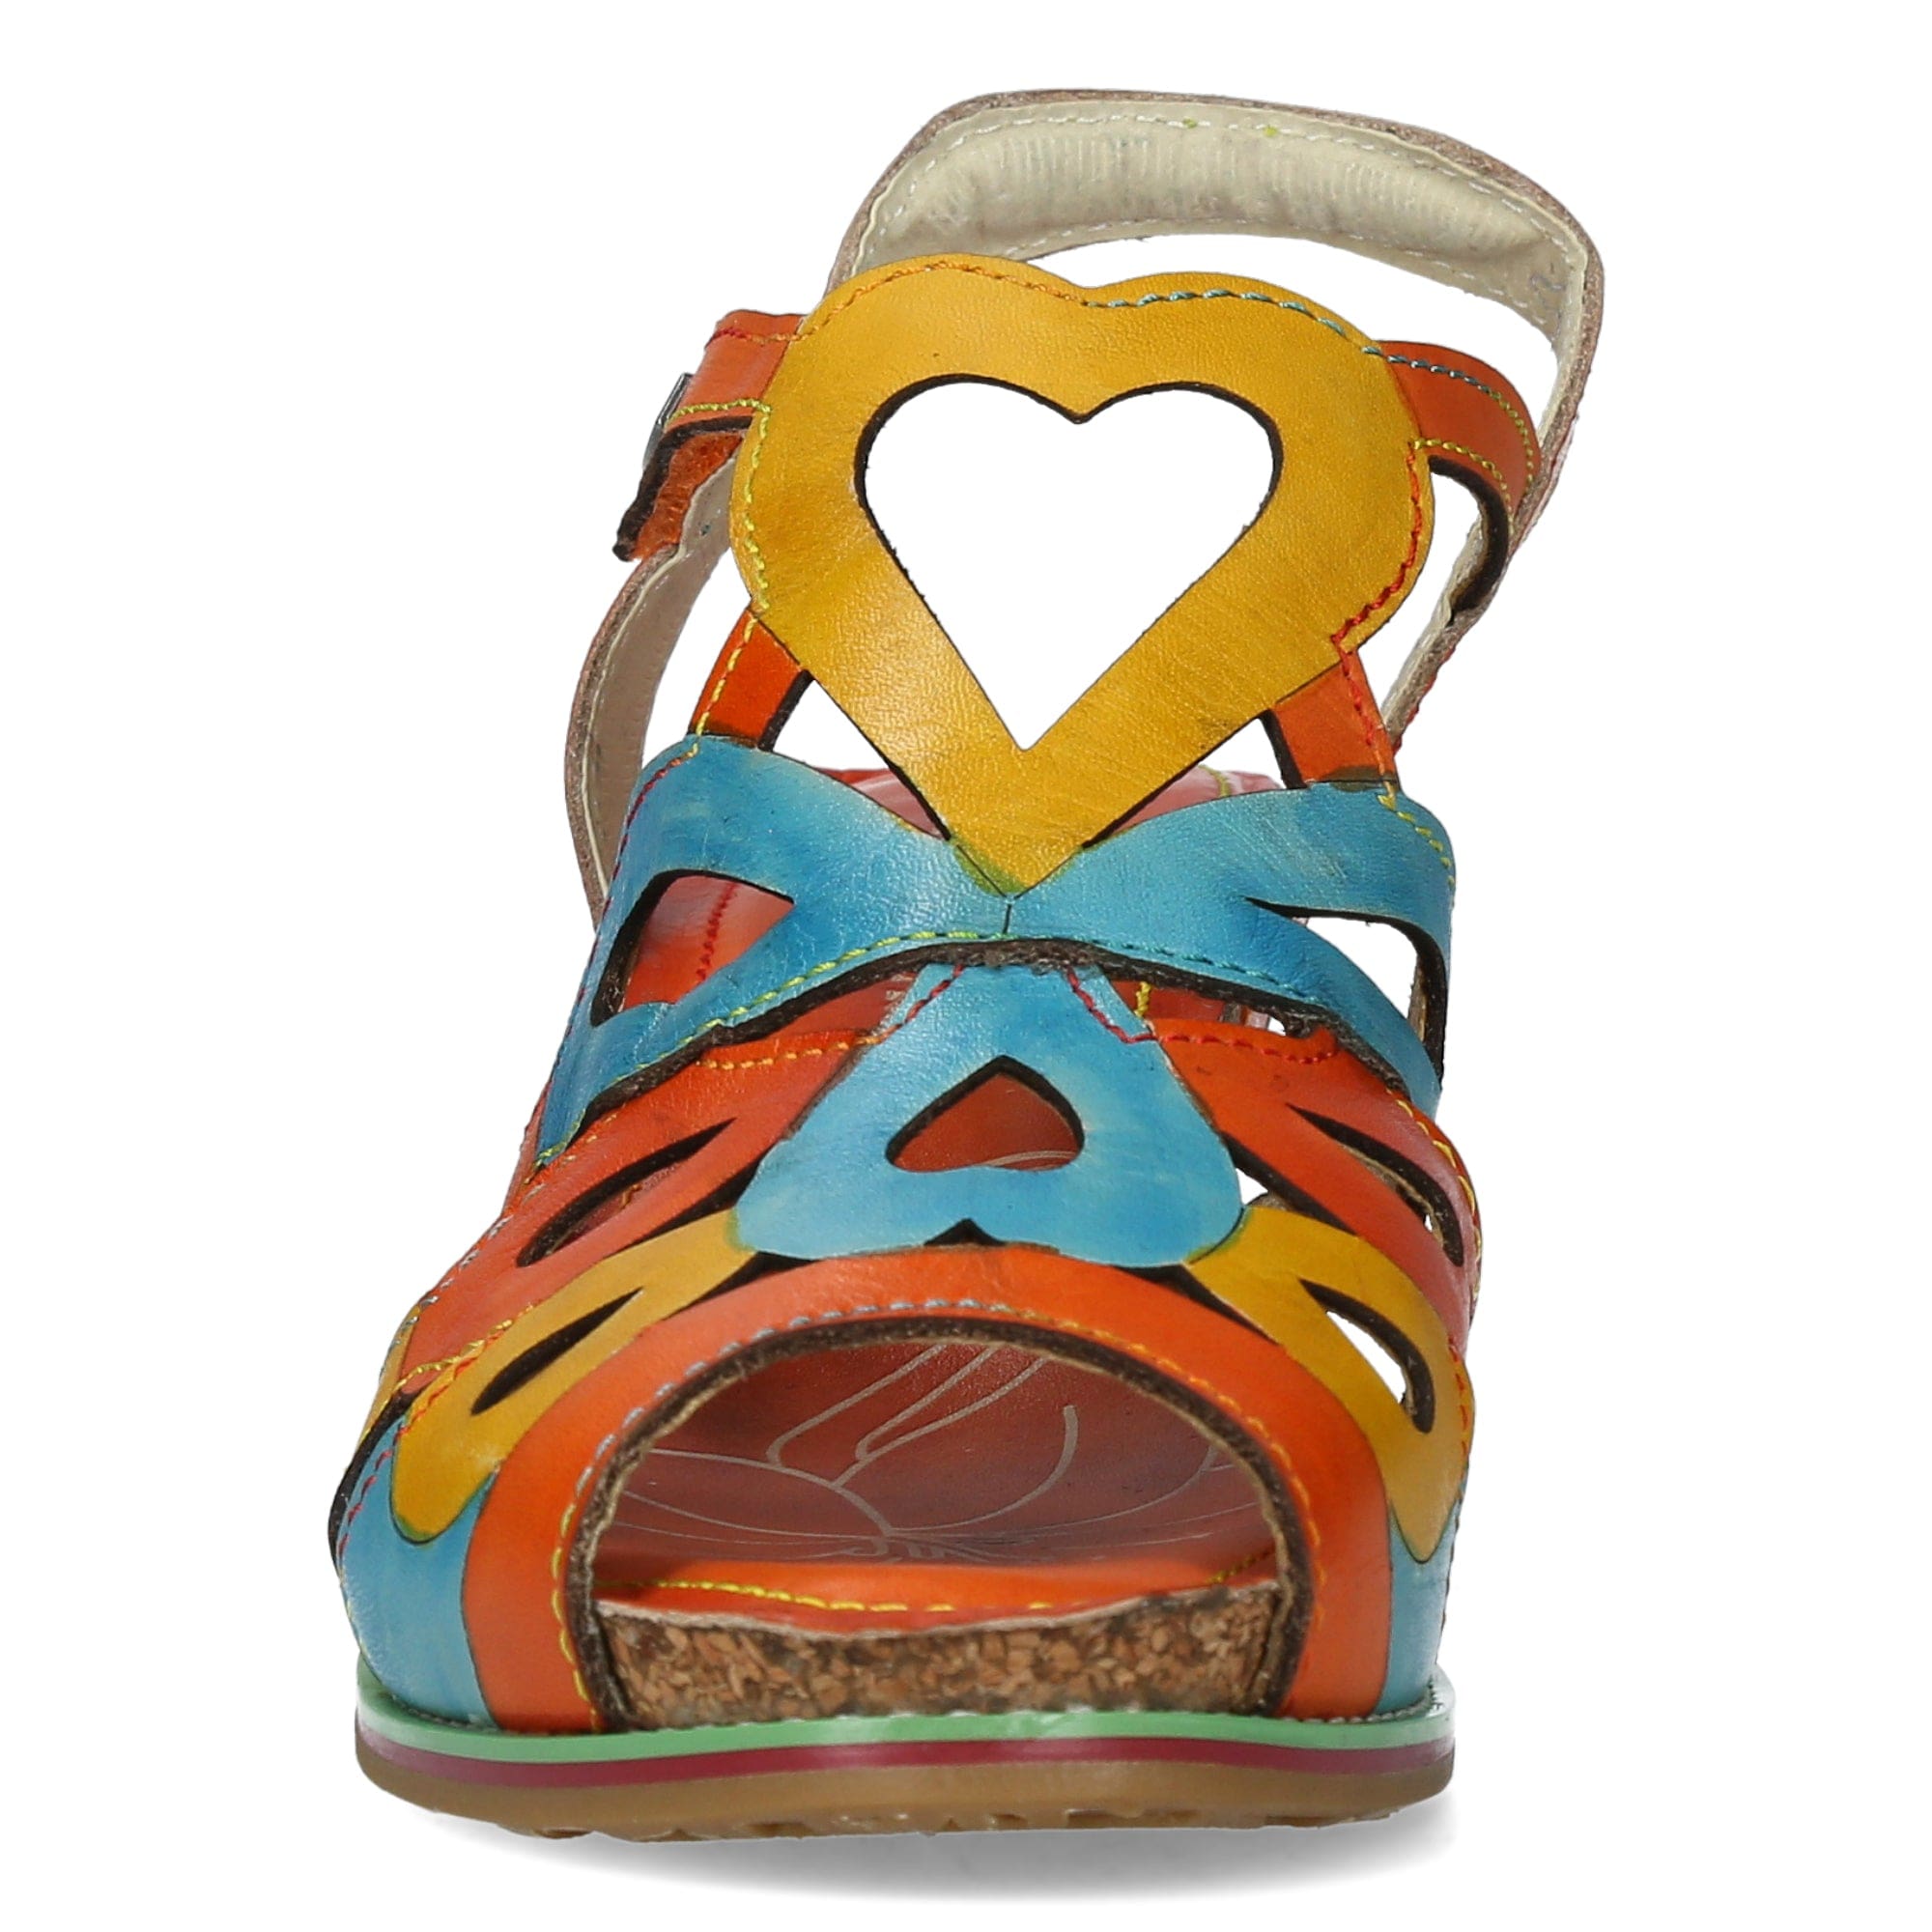 Shoe NOAO 05 - Sandal